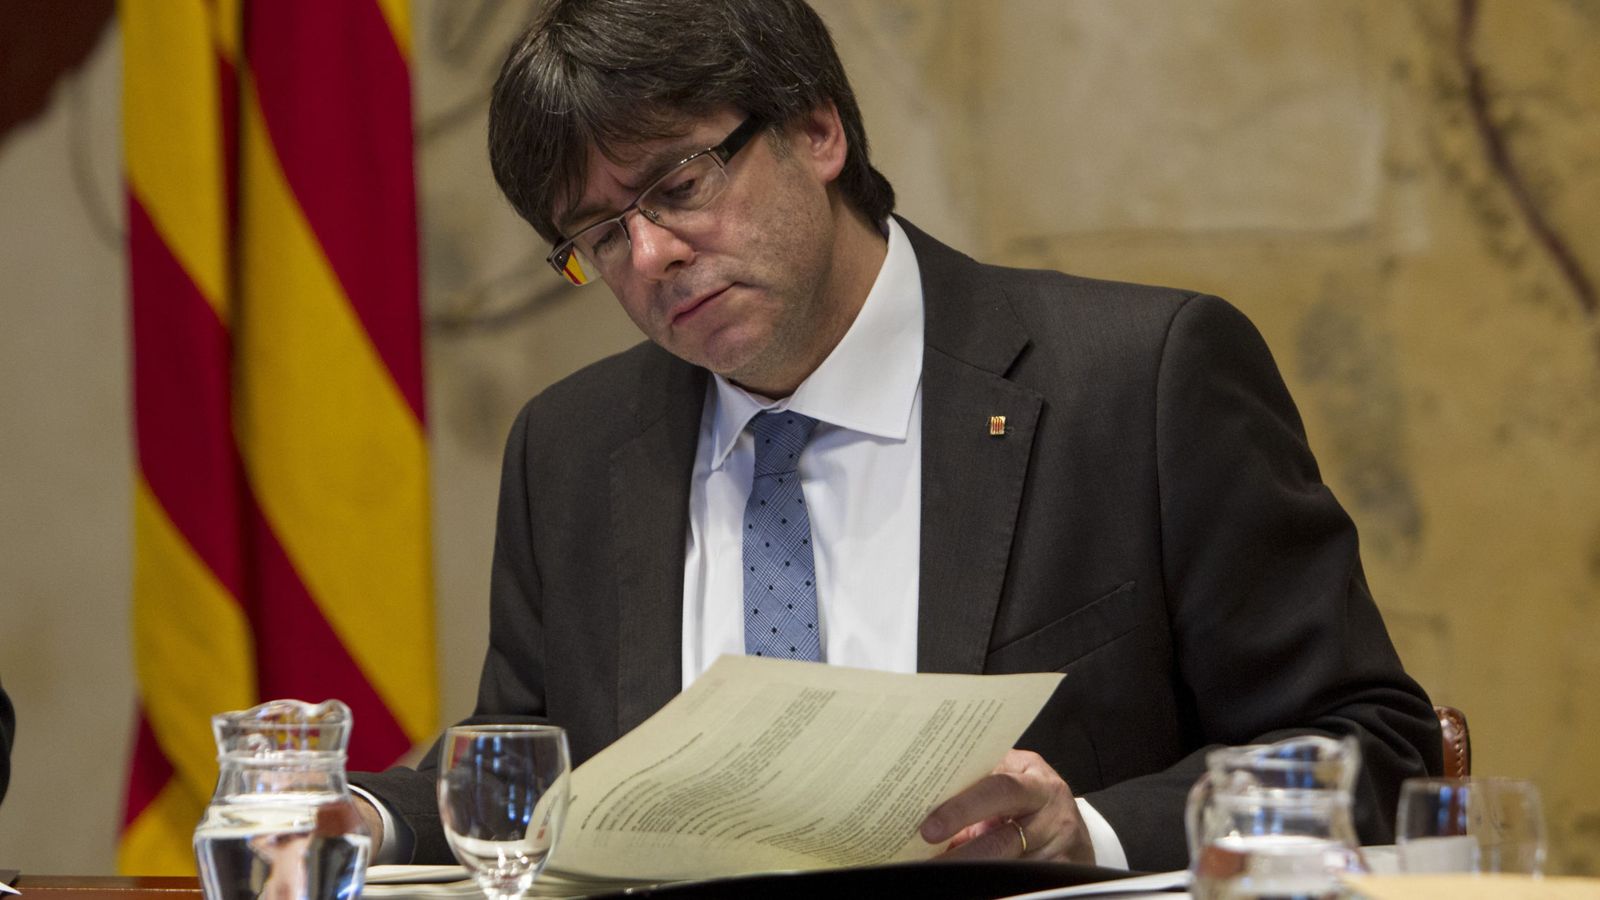 Foto: El presidente de la Generalitat de Cataluña, Carles Puigdemont, en una imagen de archivo. (Efe)